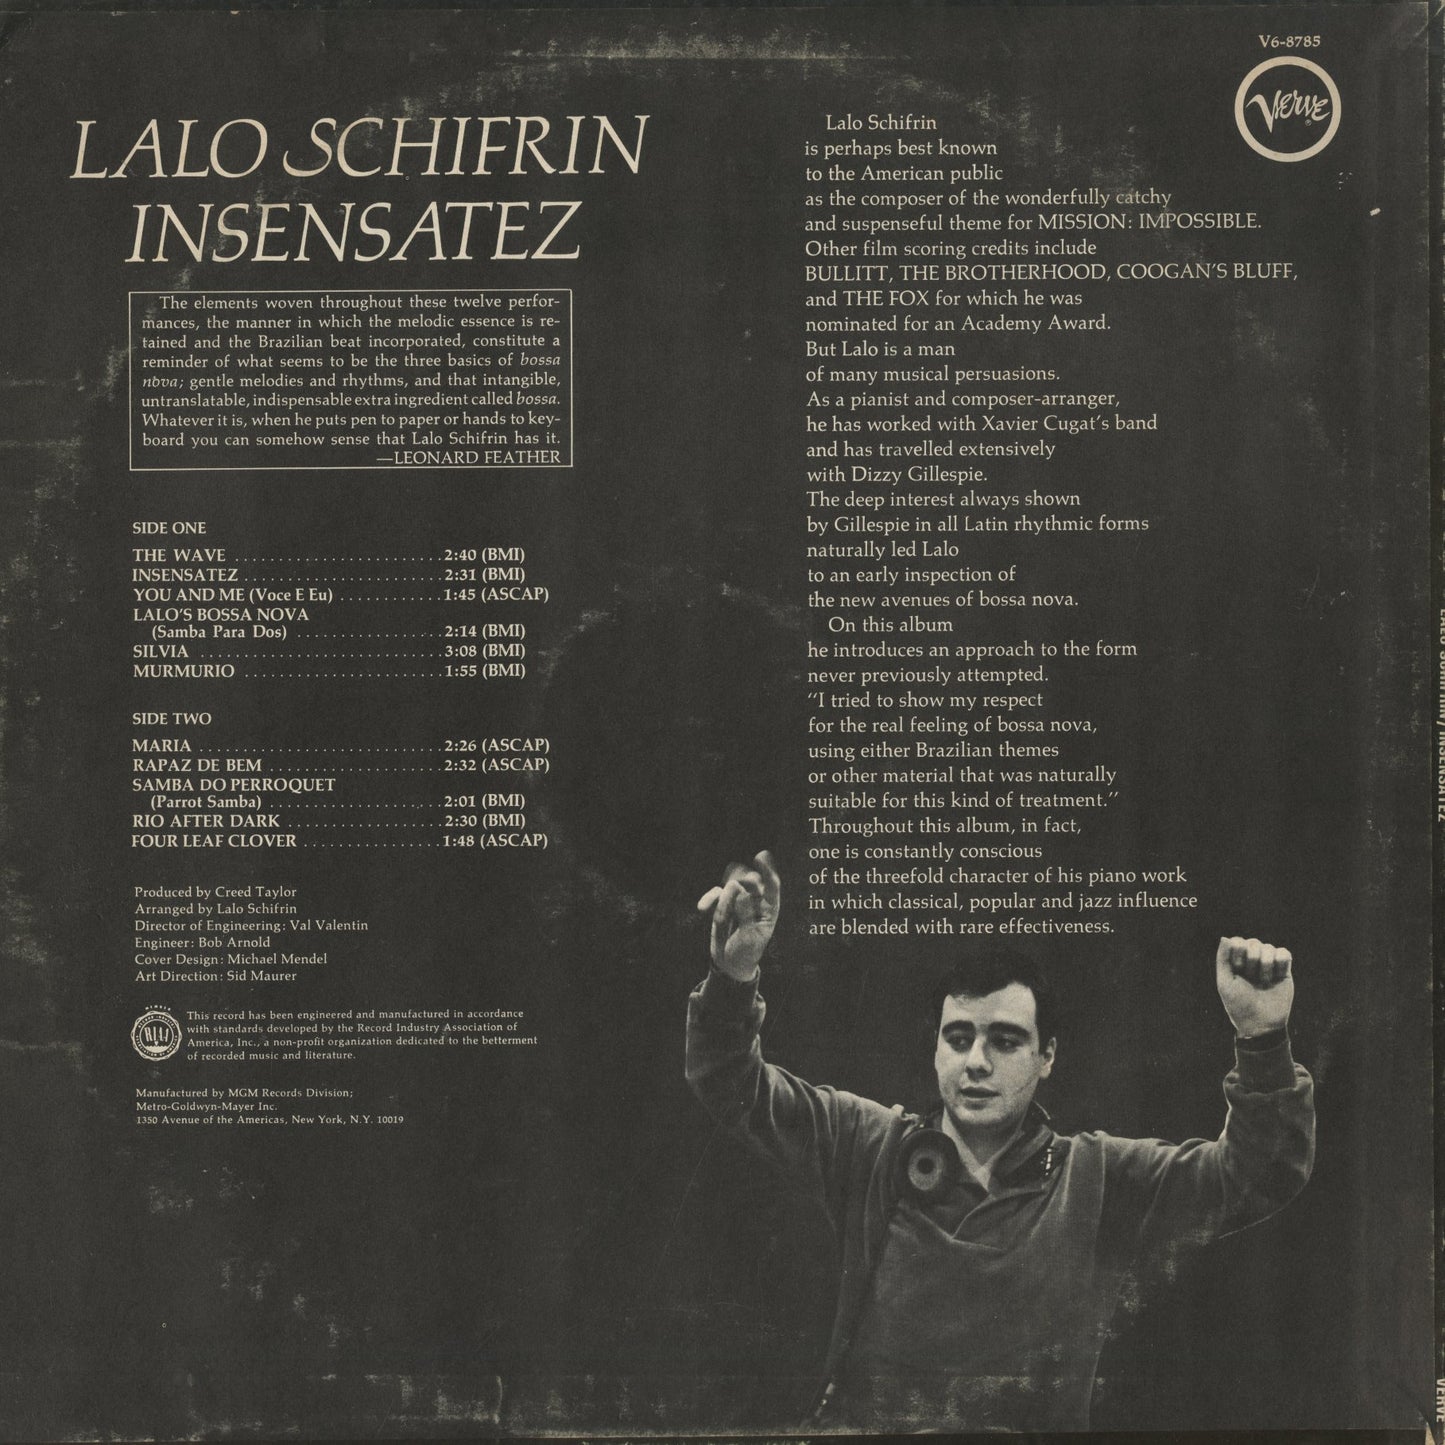 Lalo Schifrin / ラロ・シフリン / Insensatez (V6-8785)